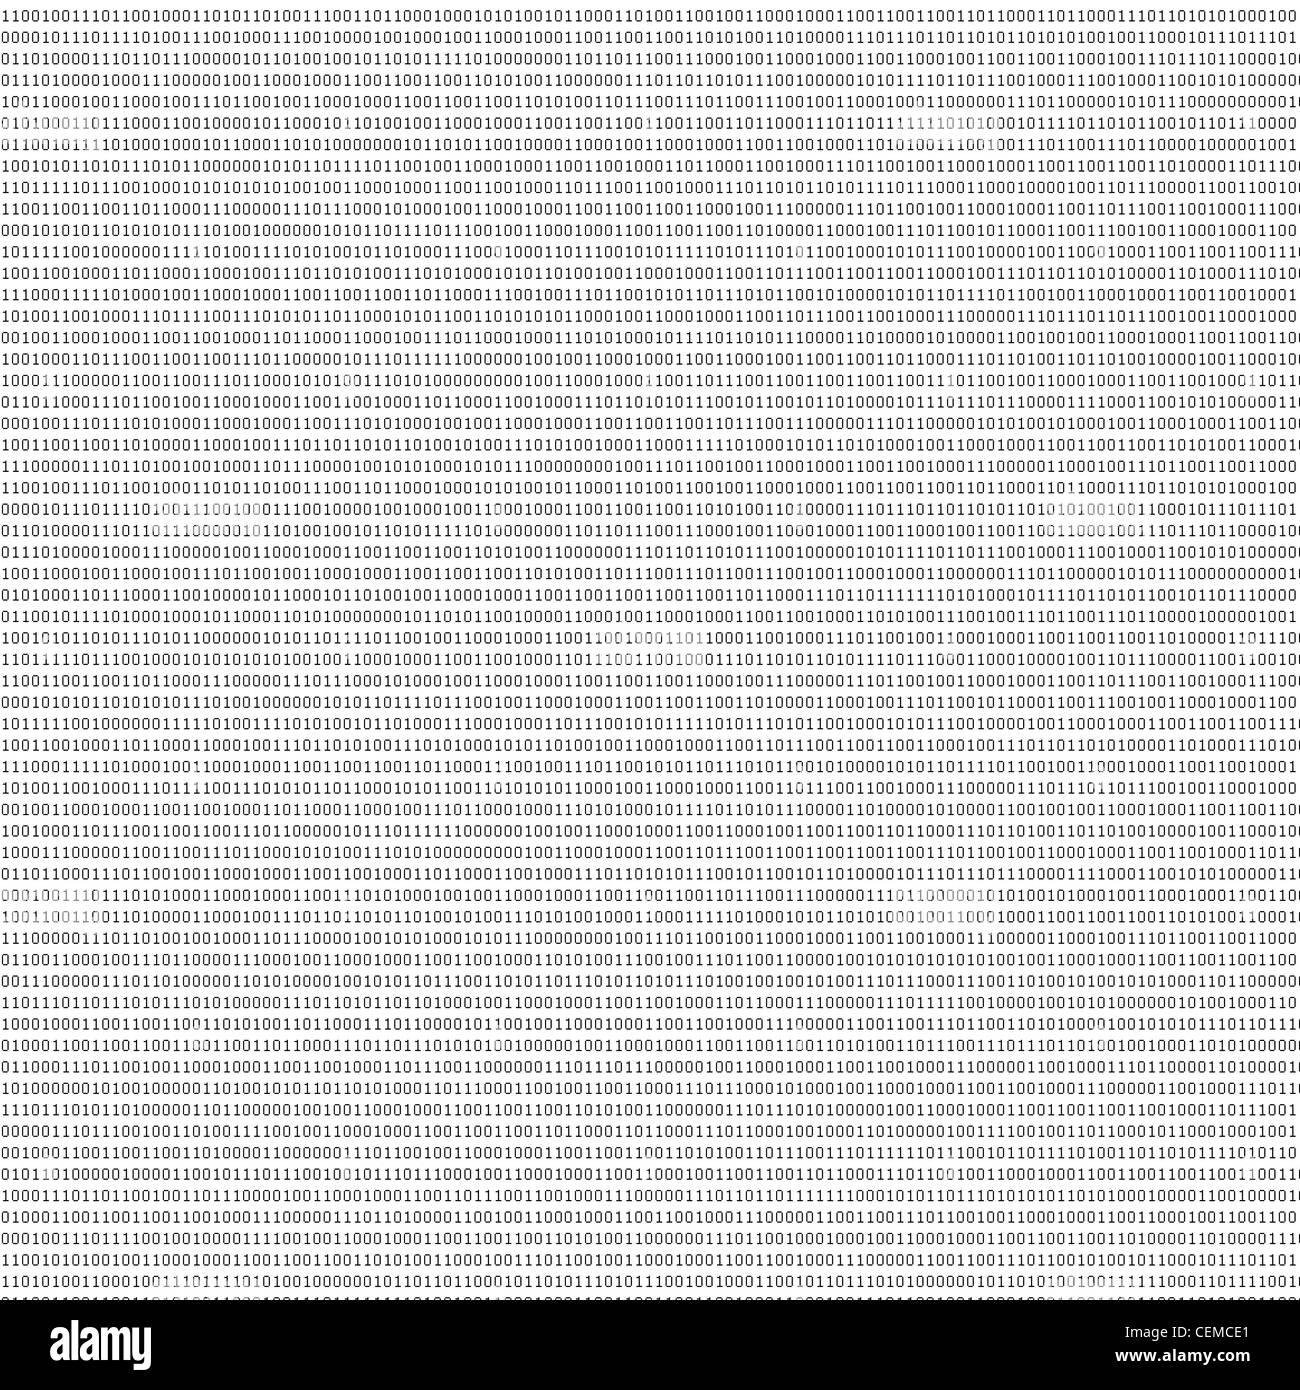 Les codes binaires noir sur feuille blanche comme texture abstraite de concevoir de nouveaux décors Banque D'Images